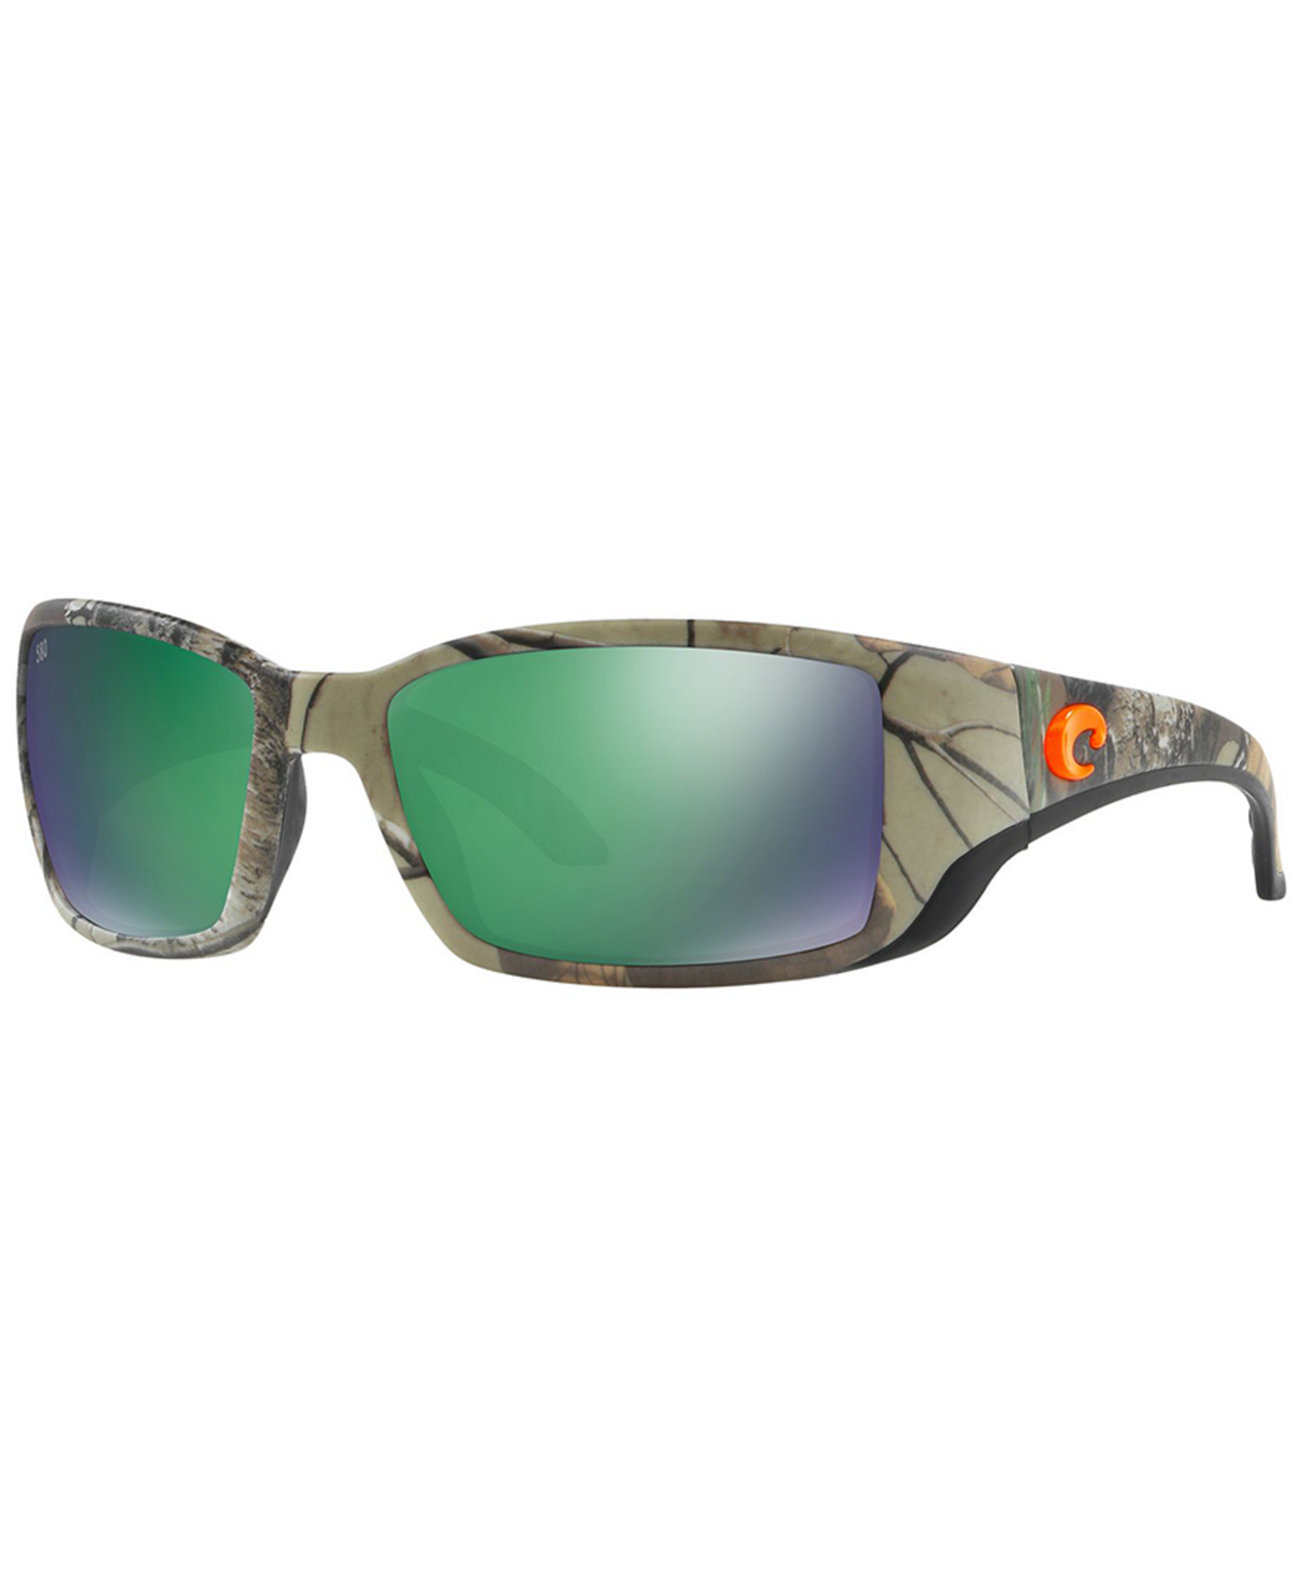 Поляризованные солнцезащитные очки, CDM BLACKFIN 62 COSTA DEL MAR